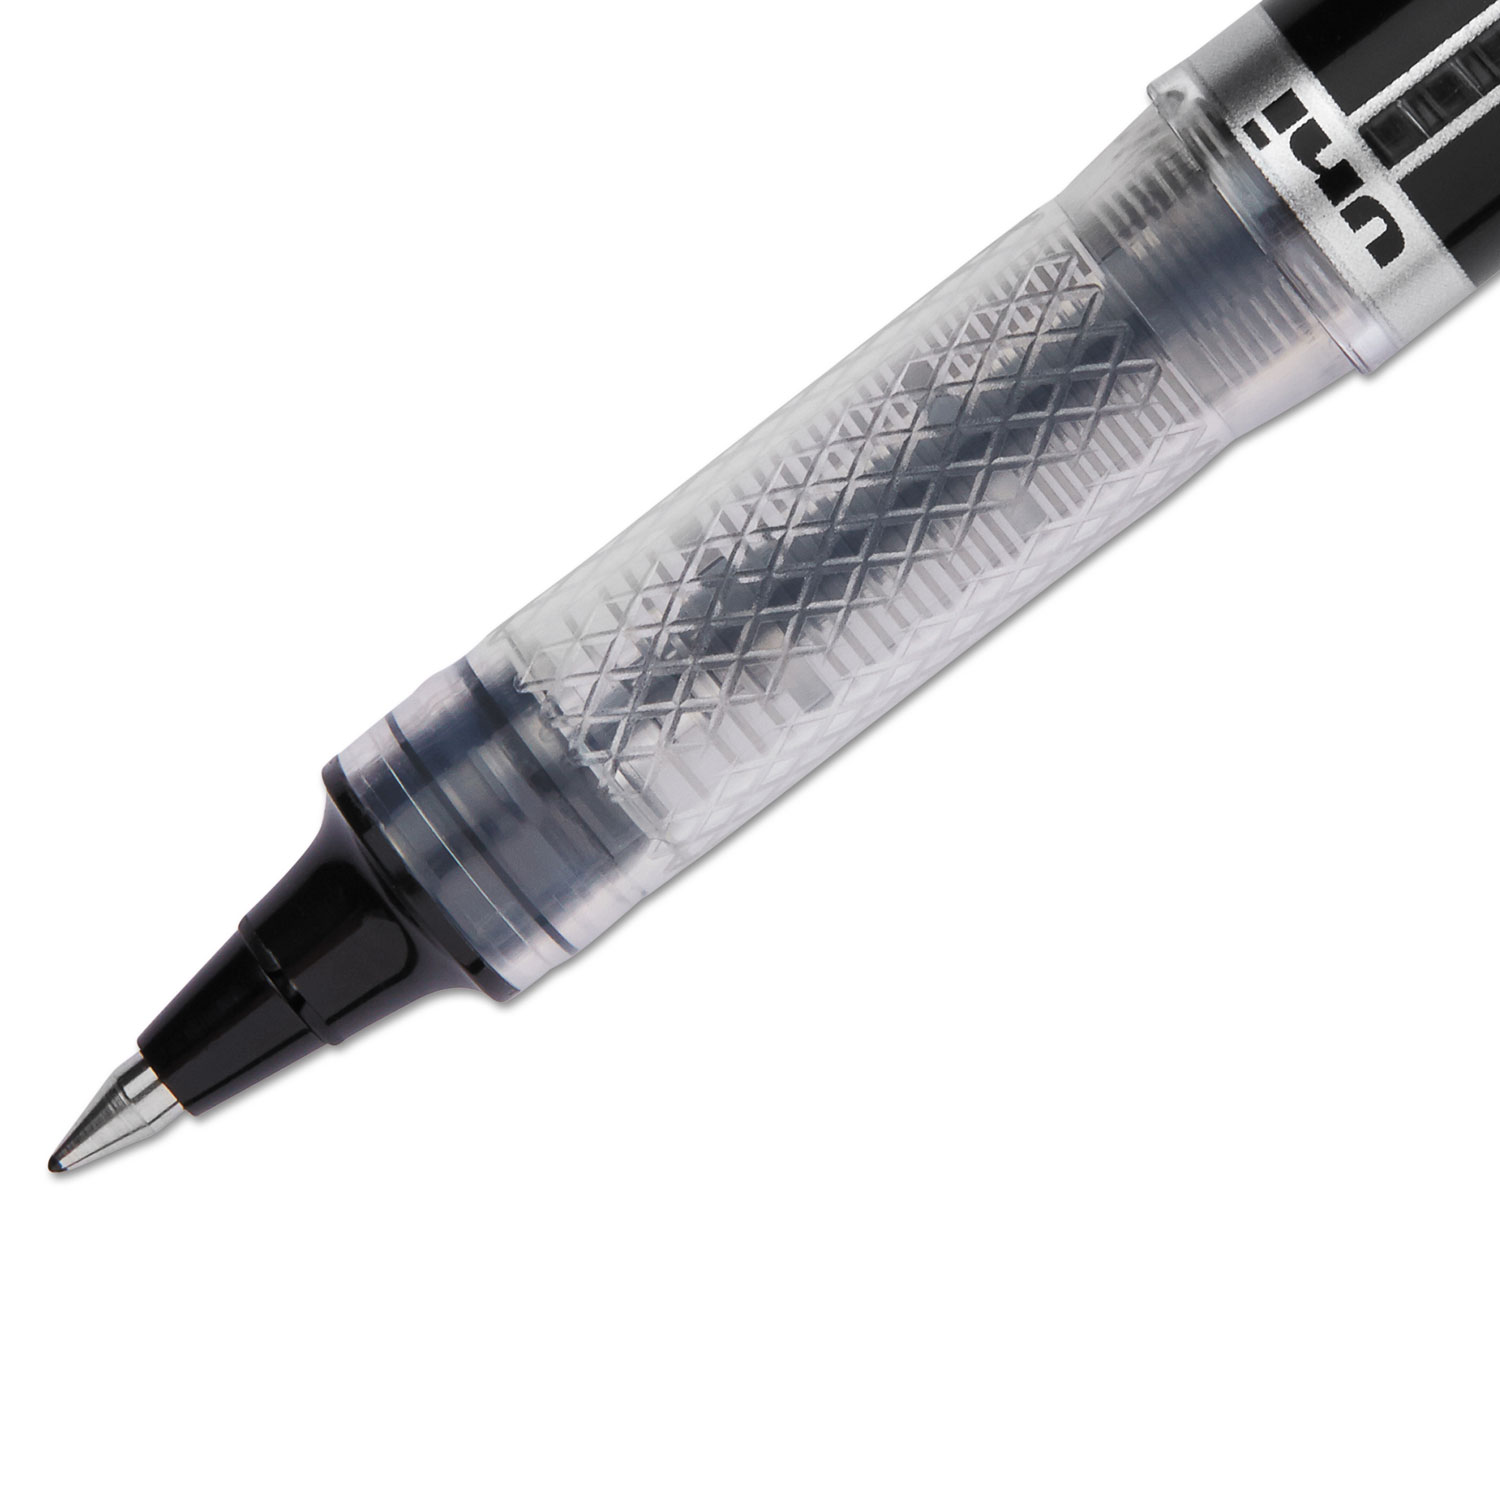 VISION ELITE Roller Ball Stick Waterproof Pen, Black Ink, Super Fine